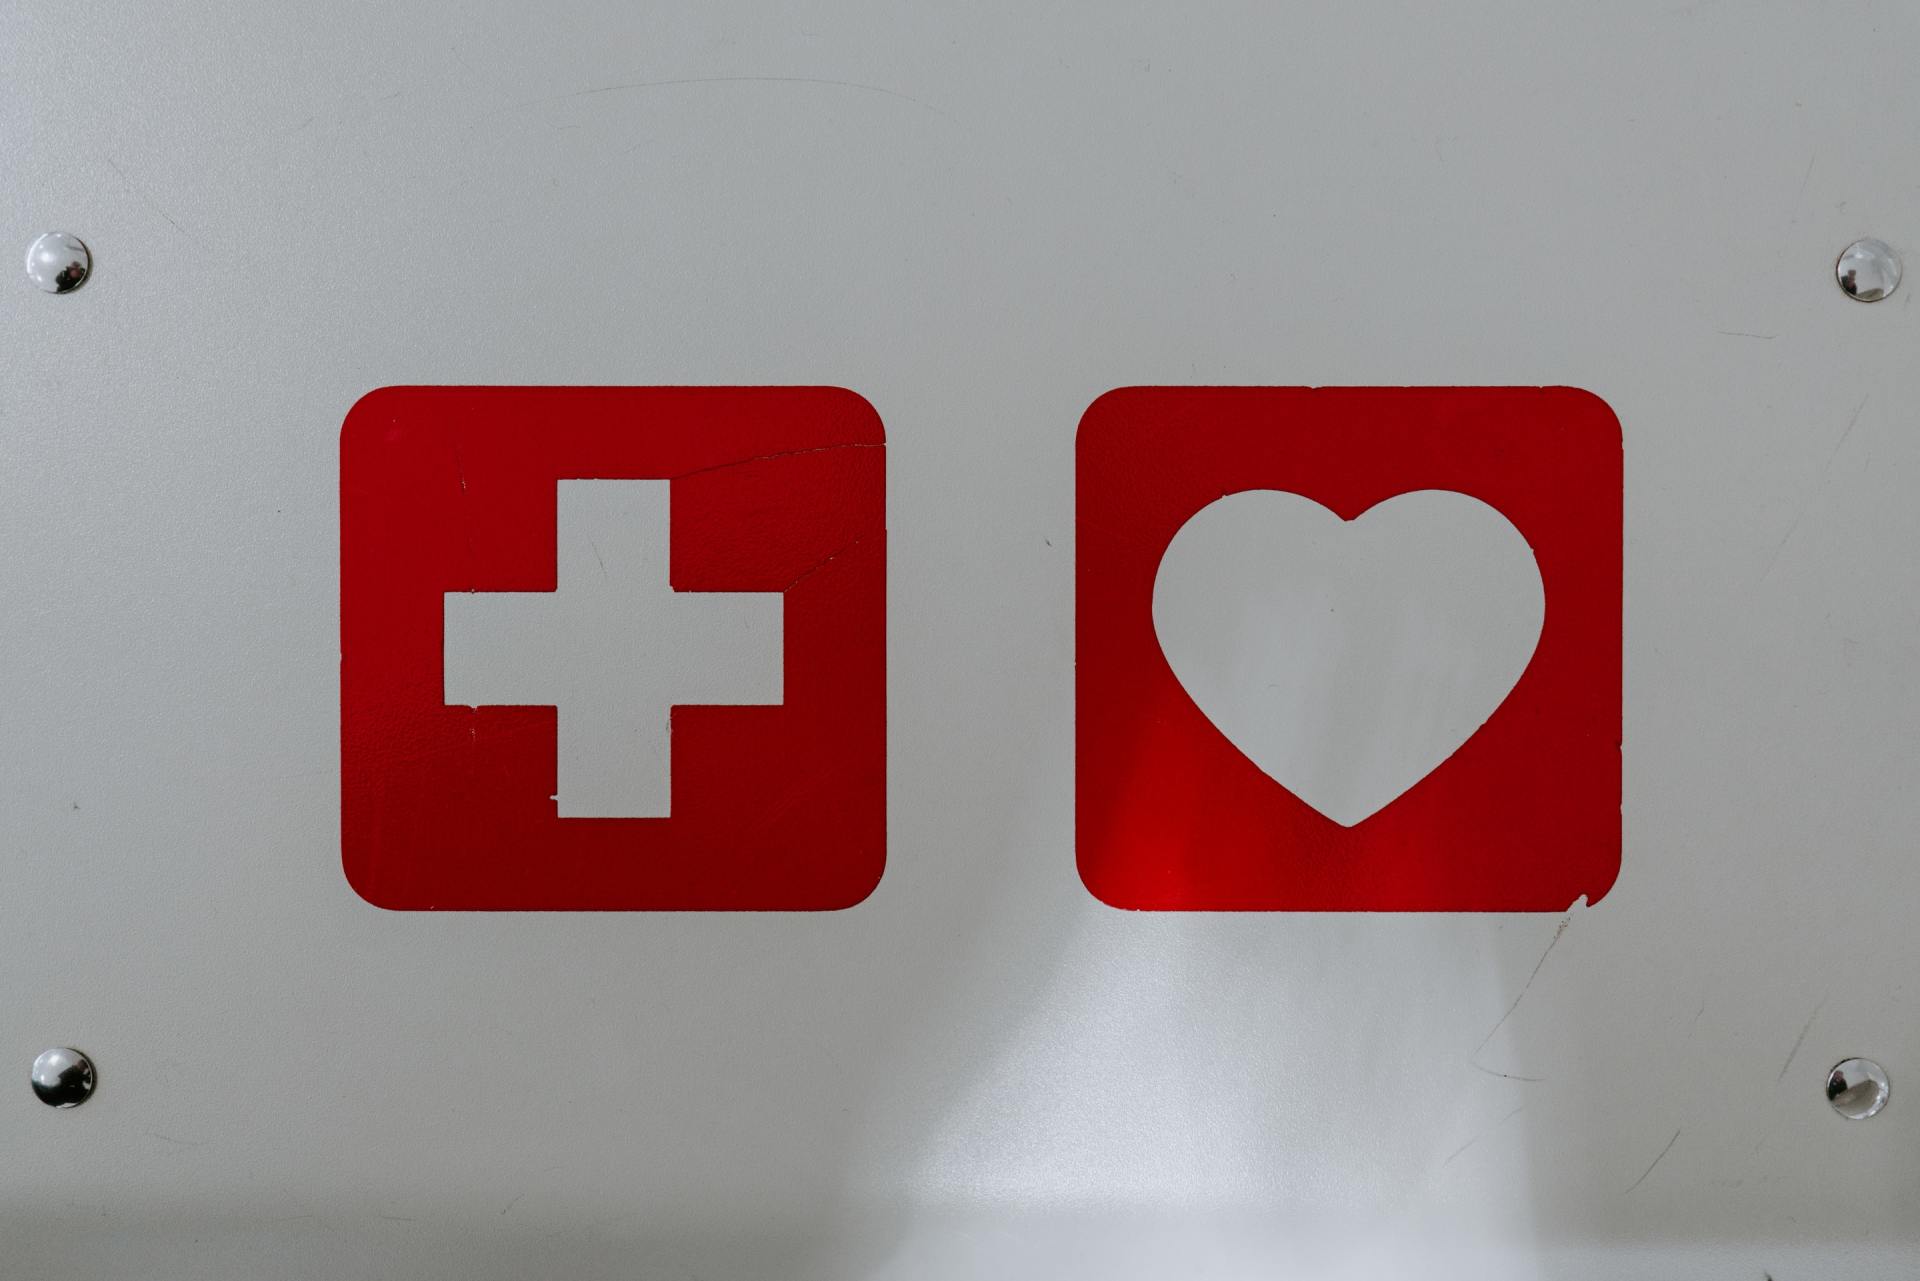 un cartello bianco con una croce rossa e un cuore bianco